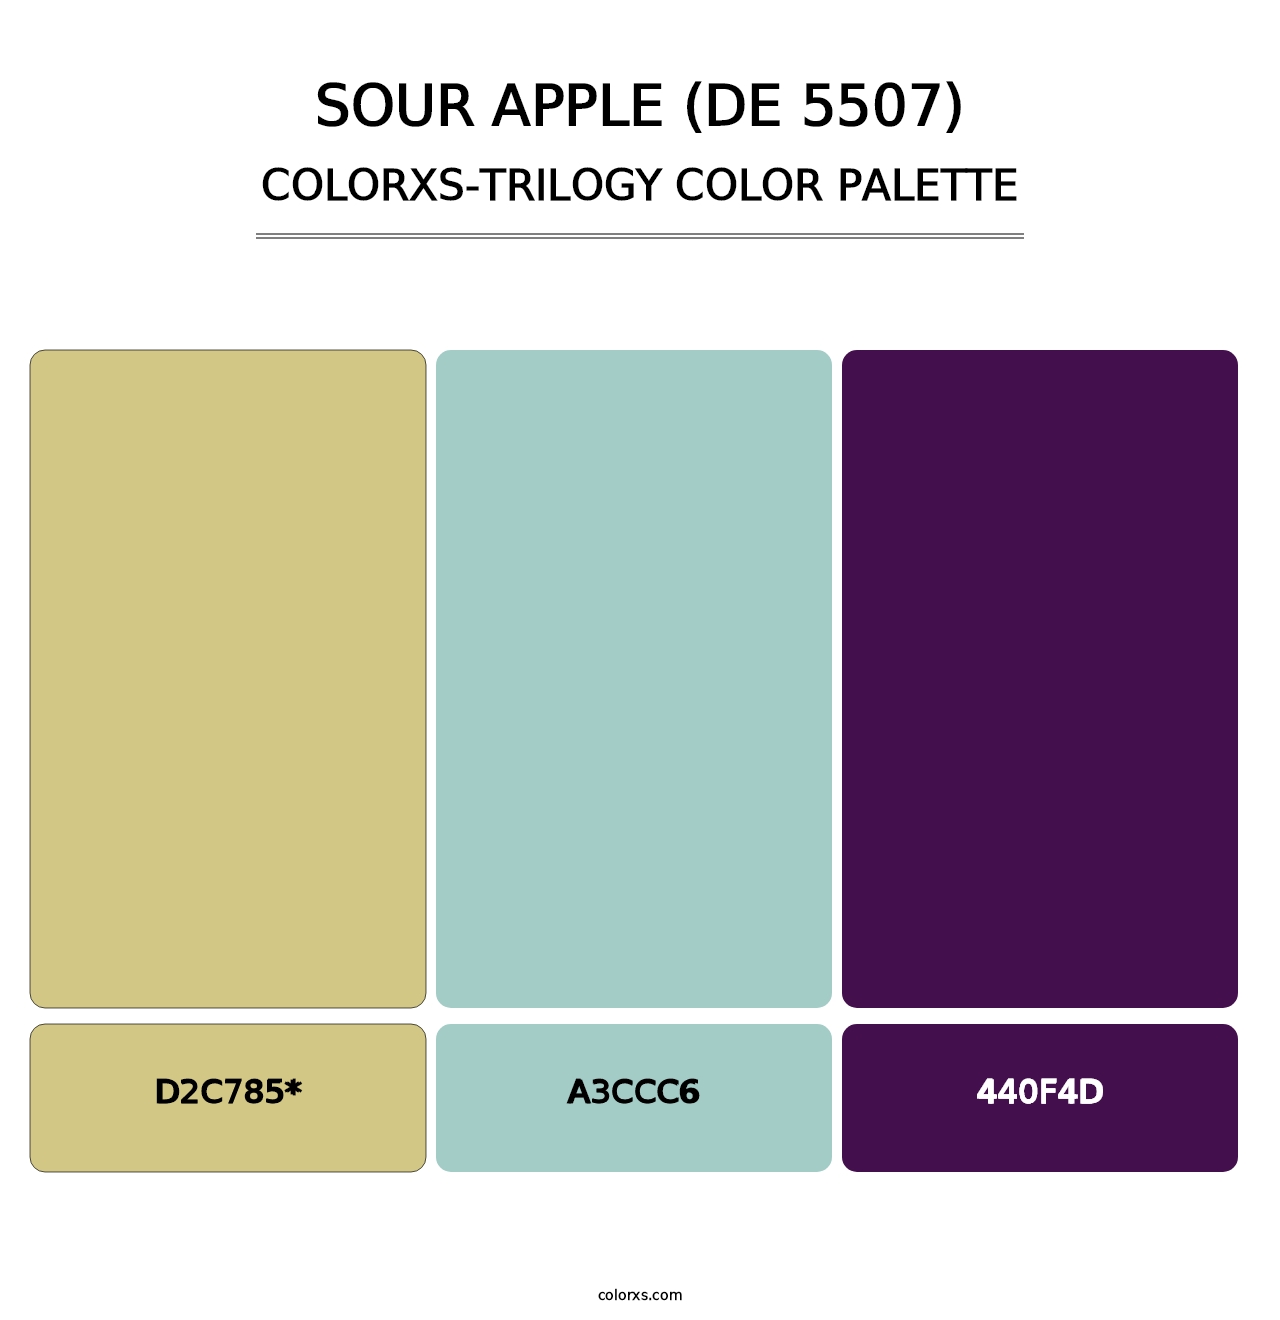 Sour Apple (DE 5507) - Colorxs Trilogy Palette